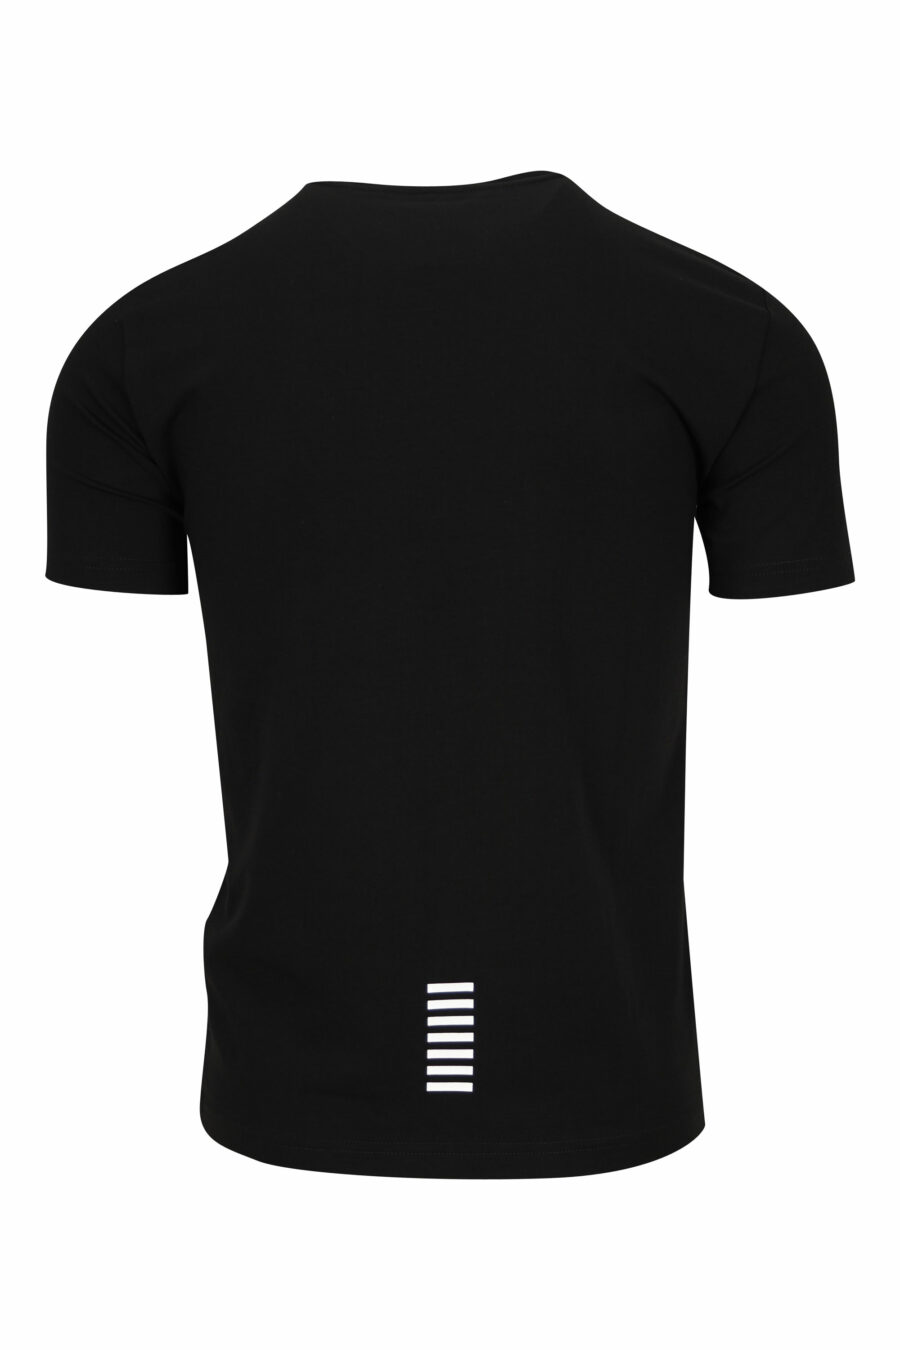 T-shirt noir avec caoutchouc "lux identity" minilogue - 8055187168106 1